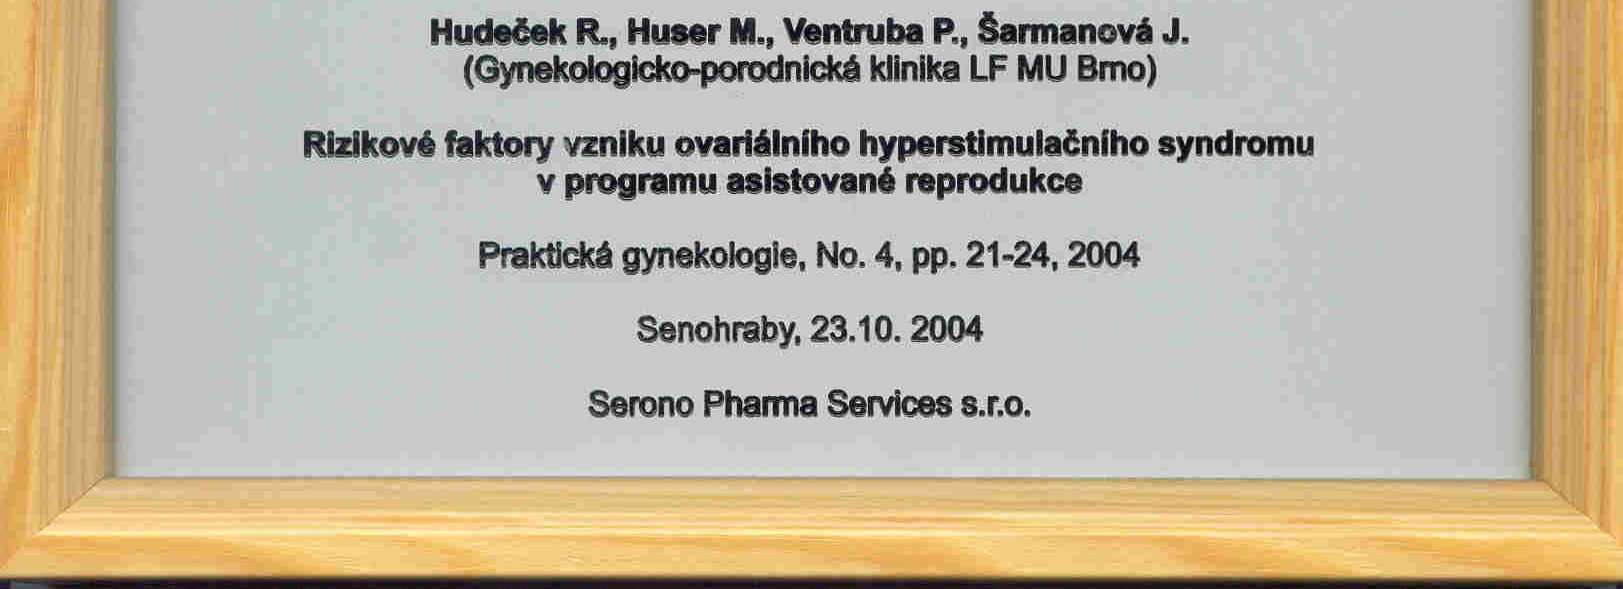 Nejlepší práce v oblasti asistované reprodukce za rok 2004 Hudeček, R., Huser, M., Ventruba, P., Šarmanová, J.